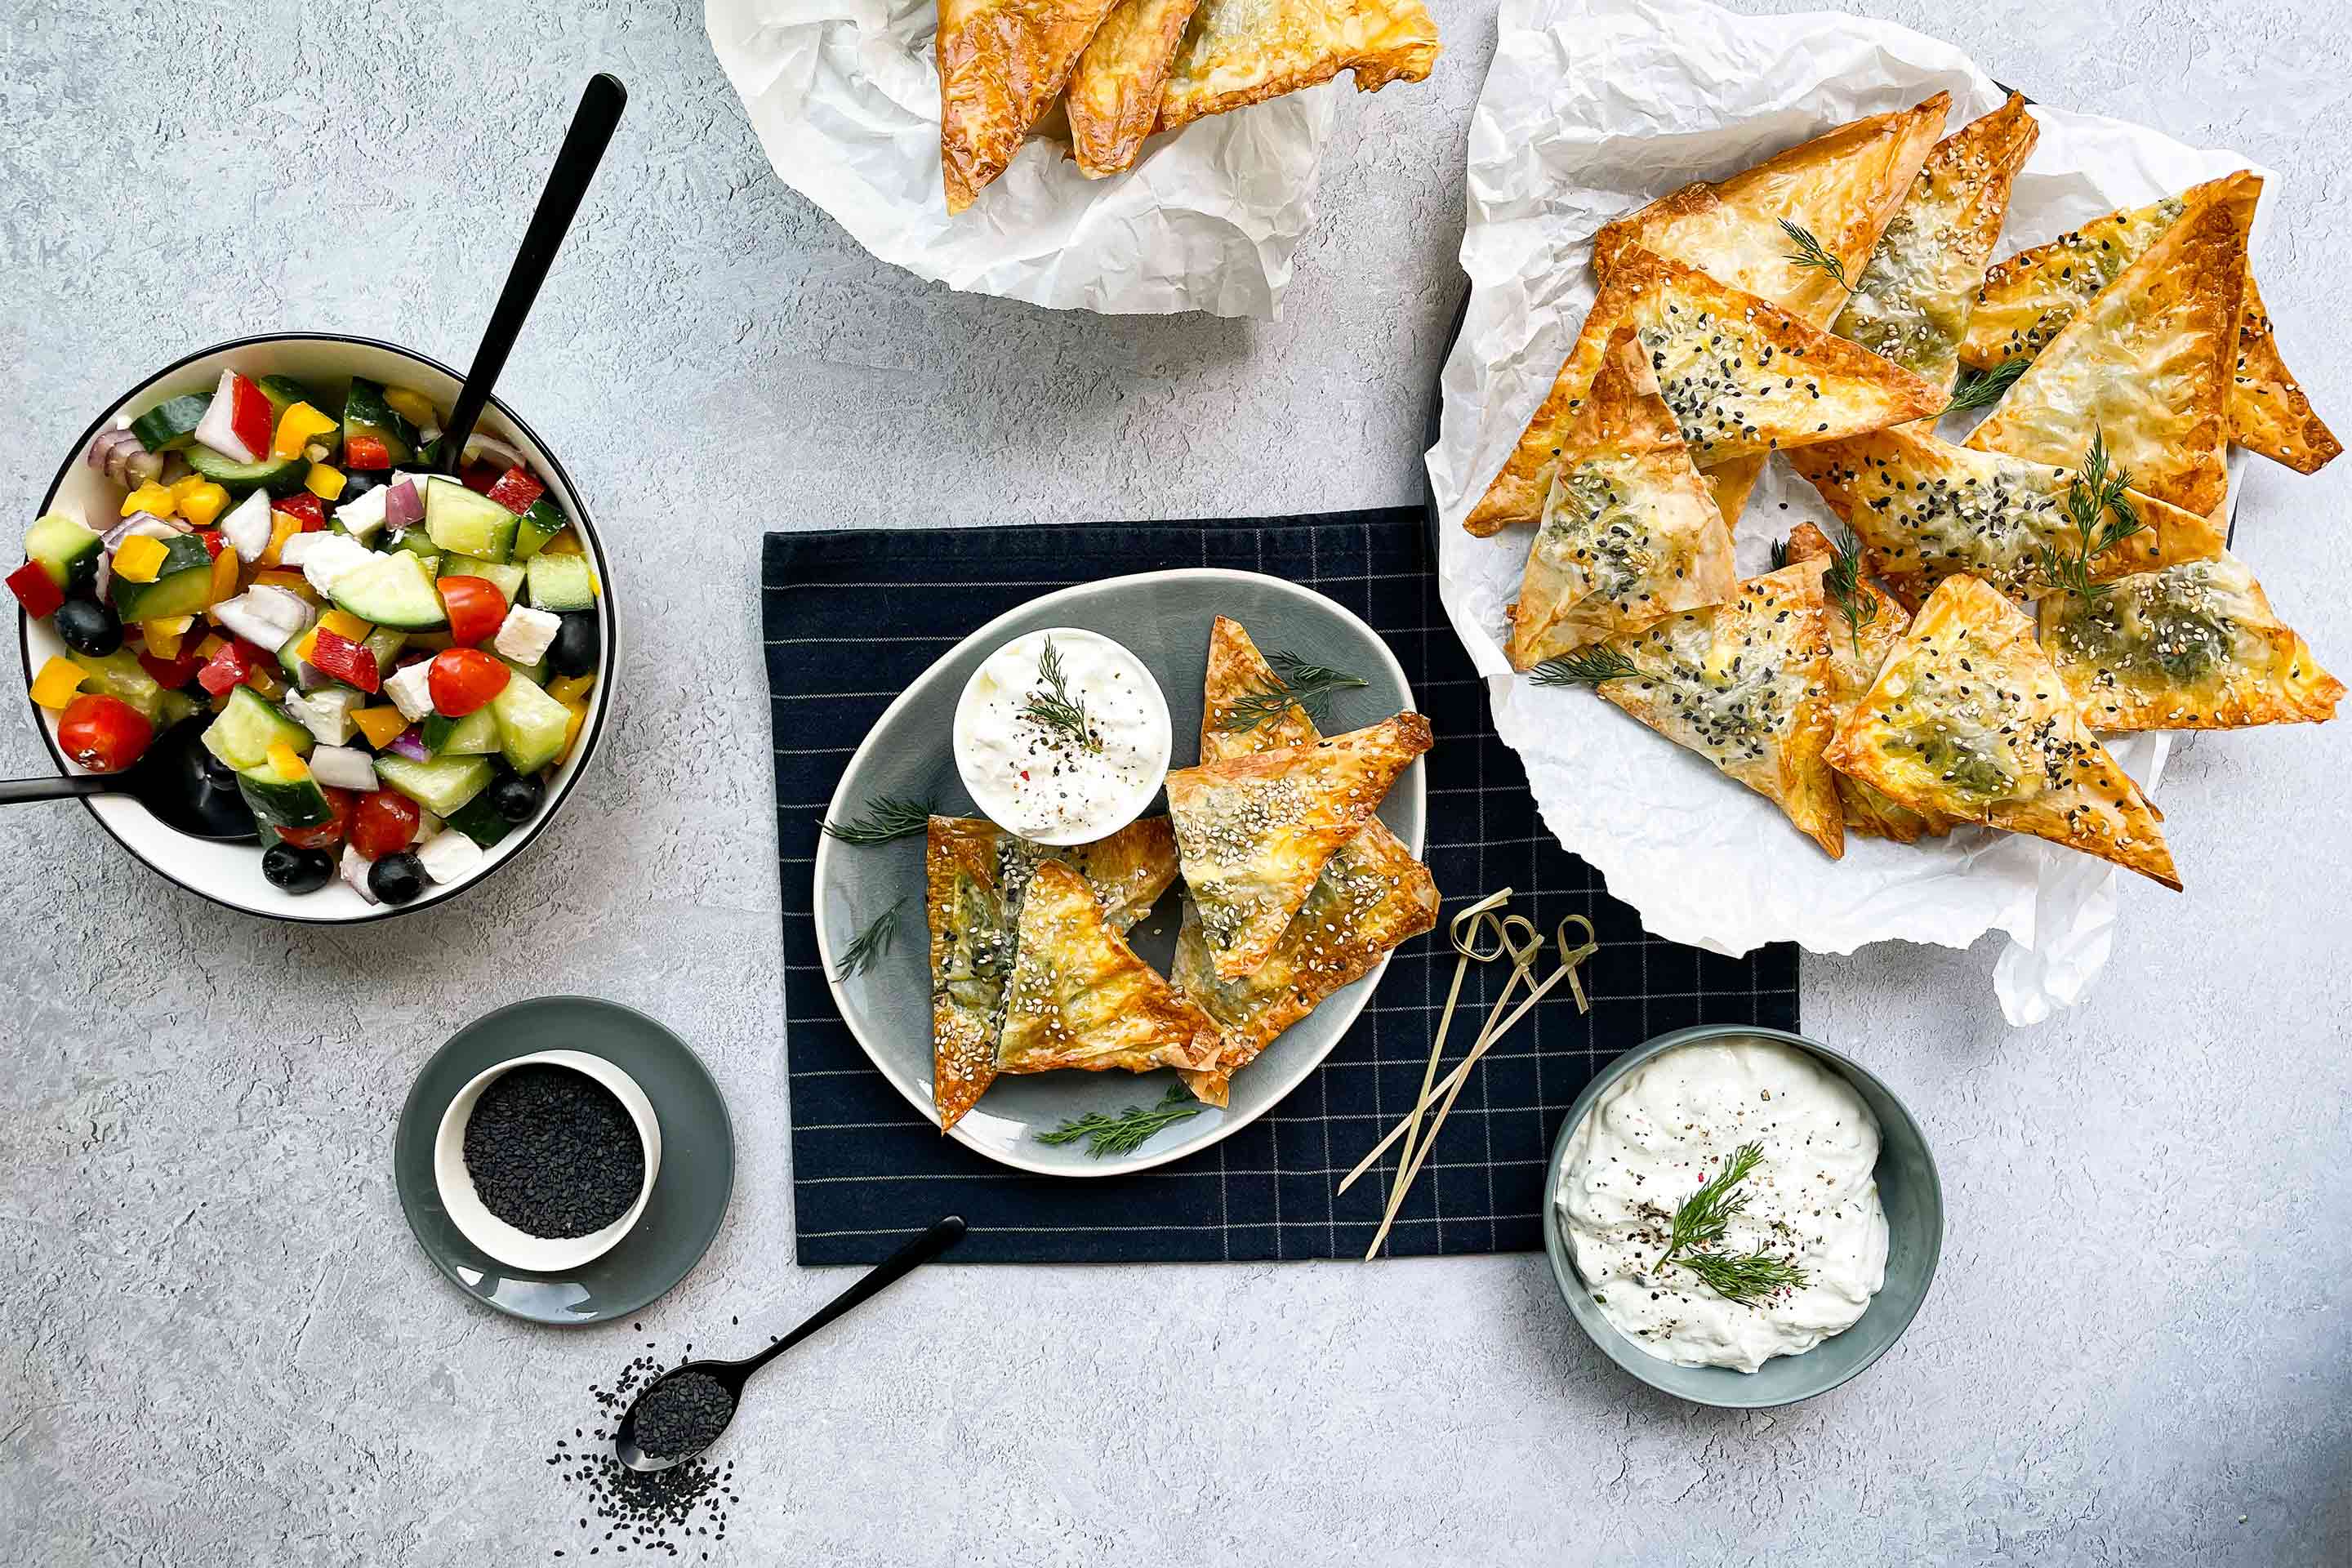 Гръцка баница със спанак на триъгълничета в чиния върху малка, черна покривка, поднесена със стръкчета копър, чеснов сос и гръцка салата.